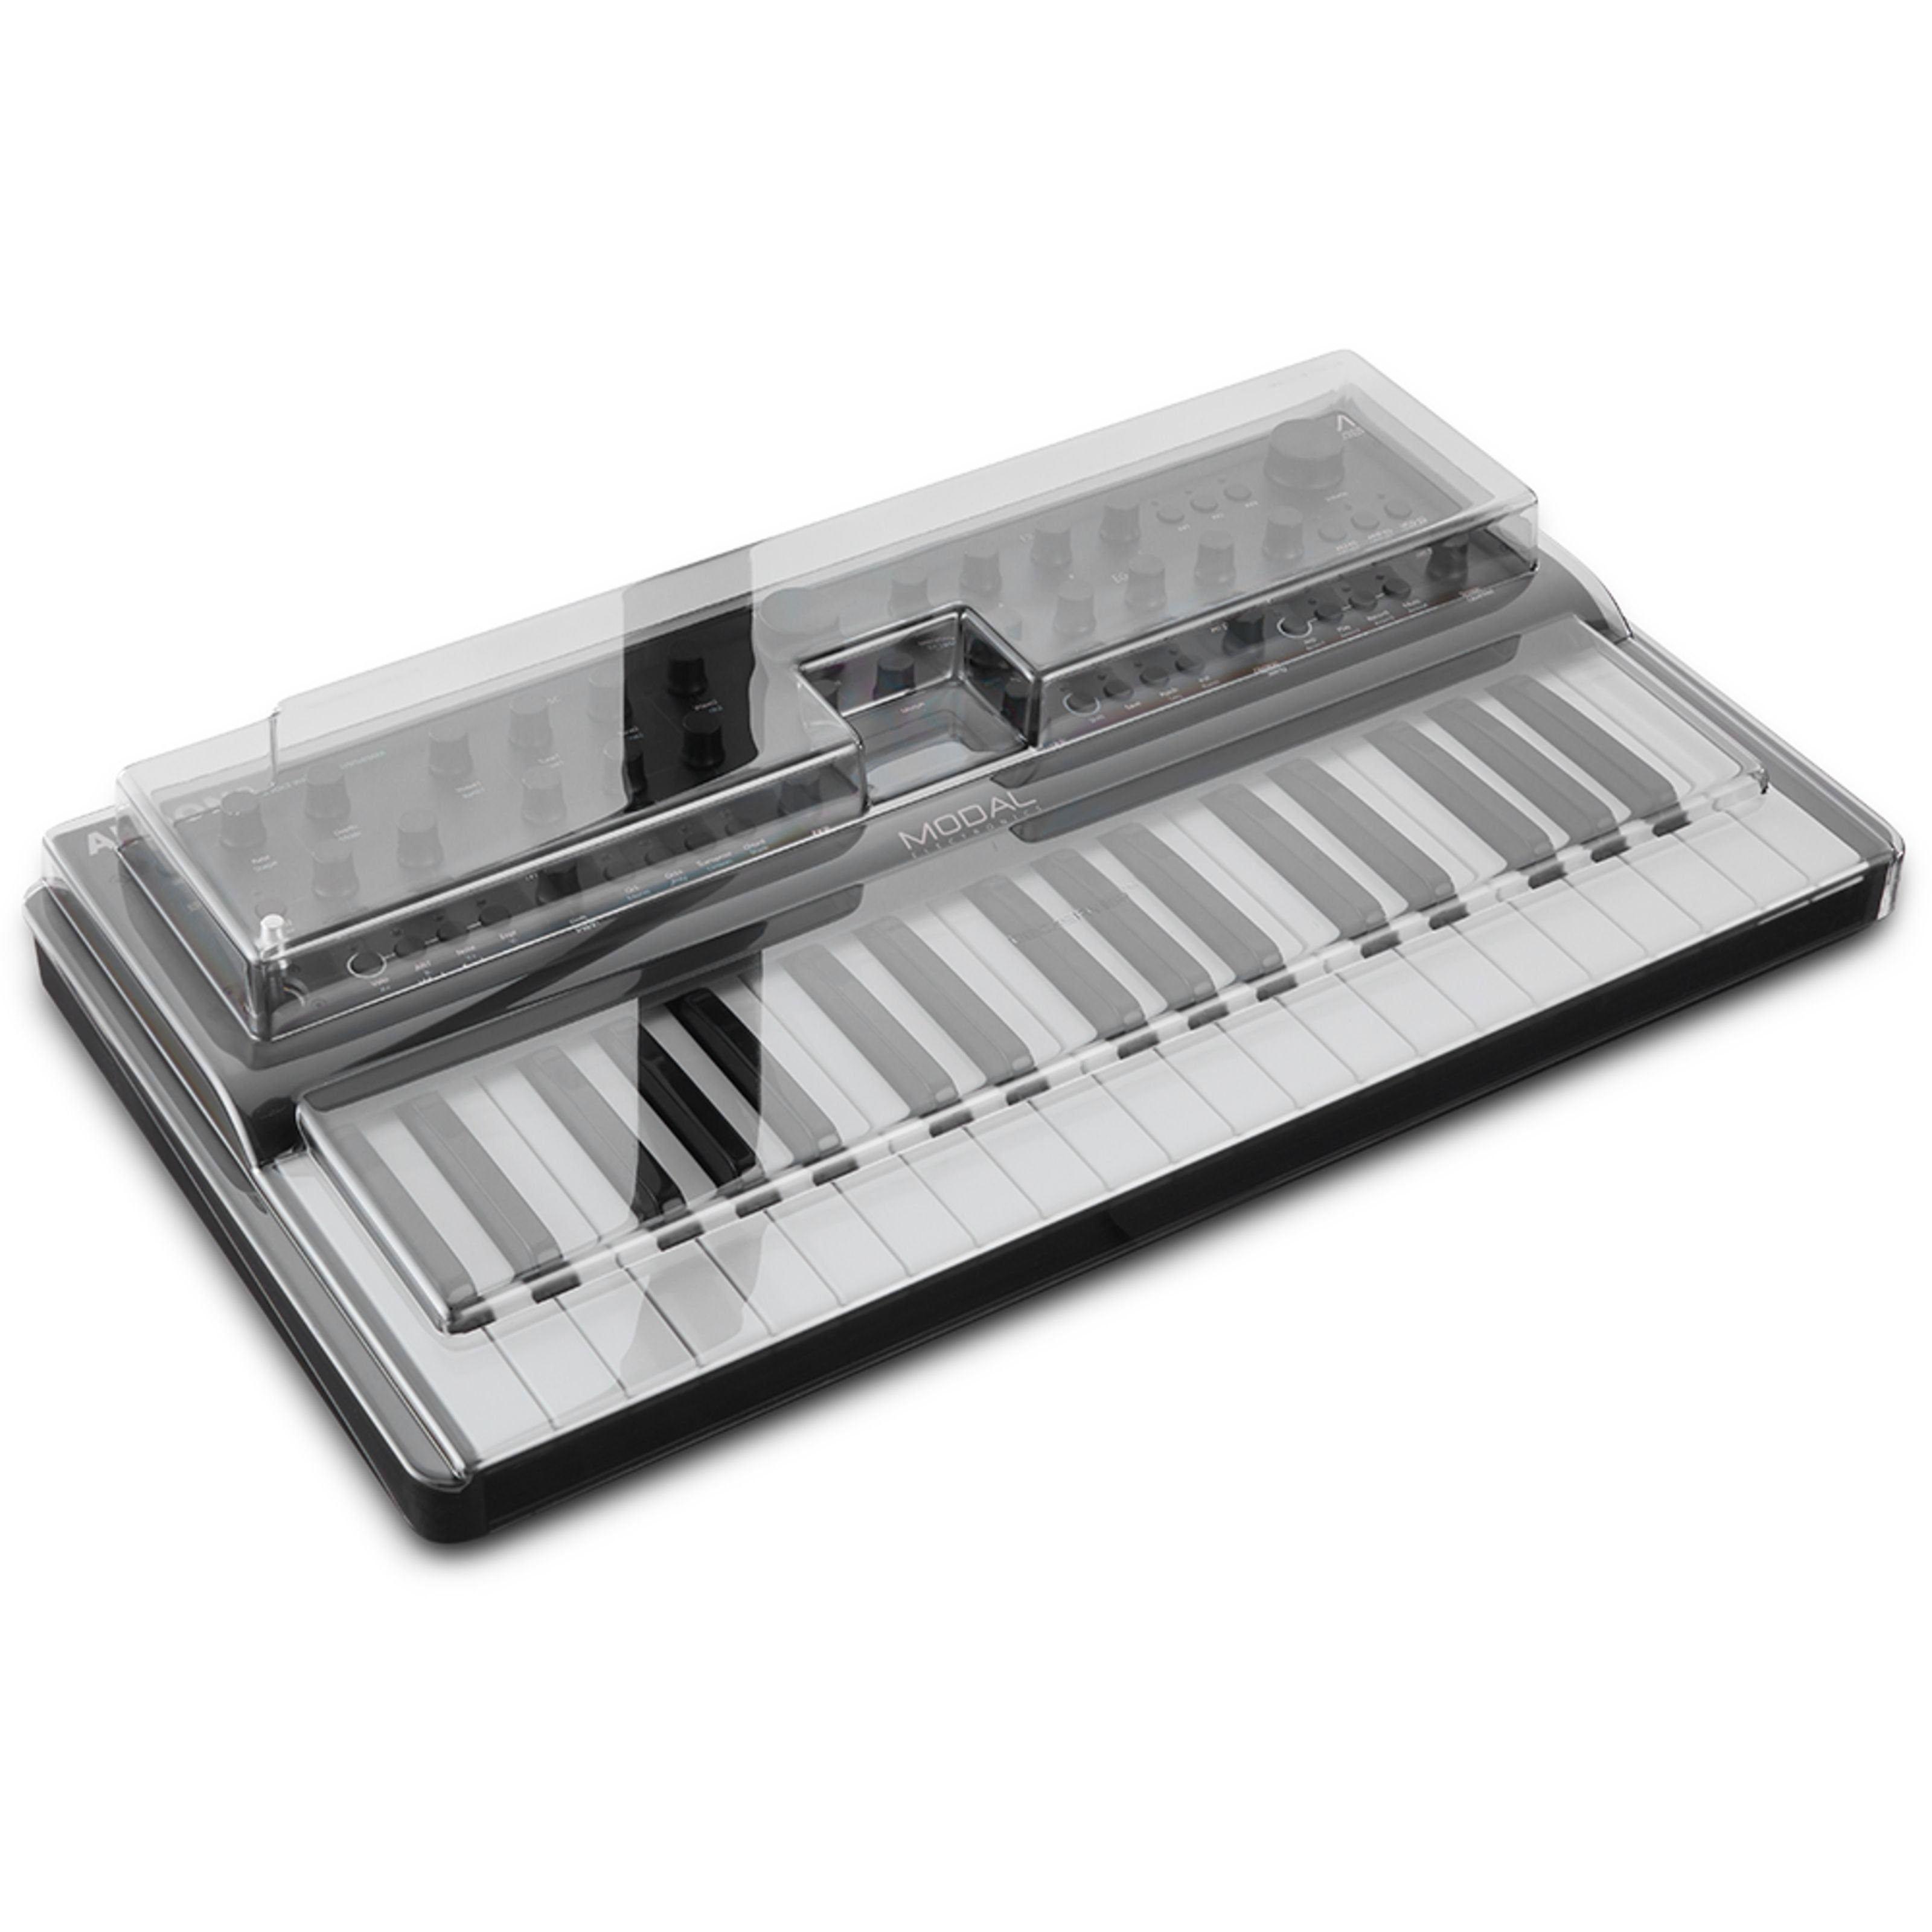 Decksaver Spielzeug-Musikinstrument, Modal Argon8 / Cobalt8 Cover - Abdeckung für Keyboards